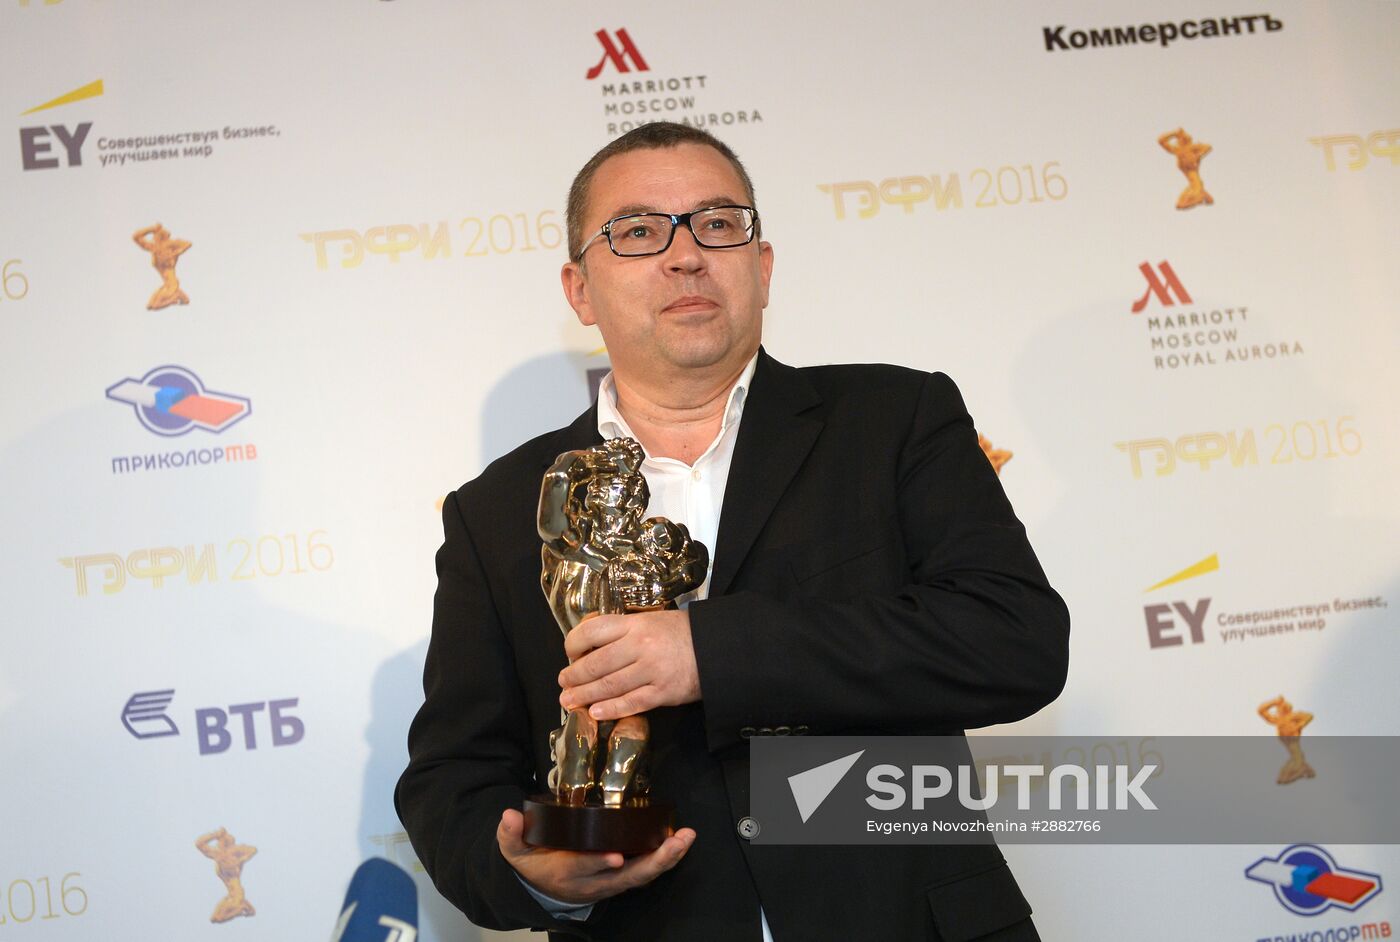 TEFI-2016 Award Ceremony